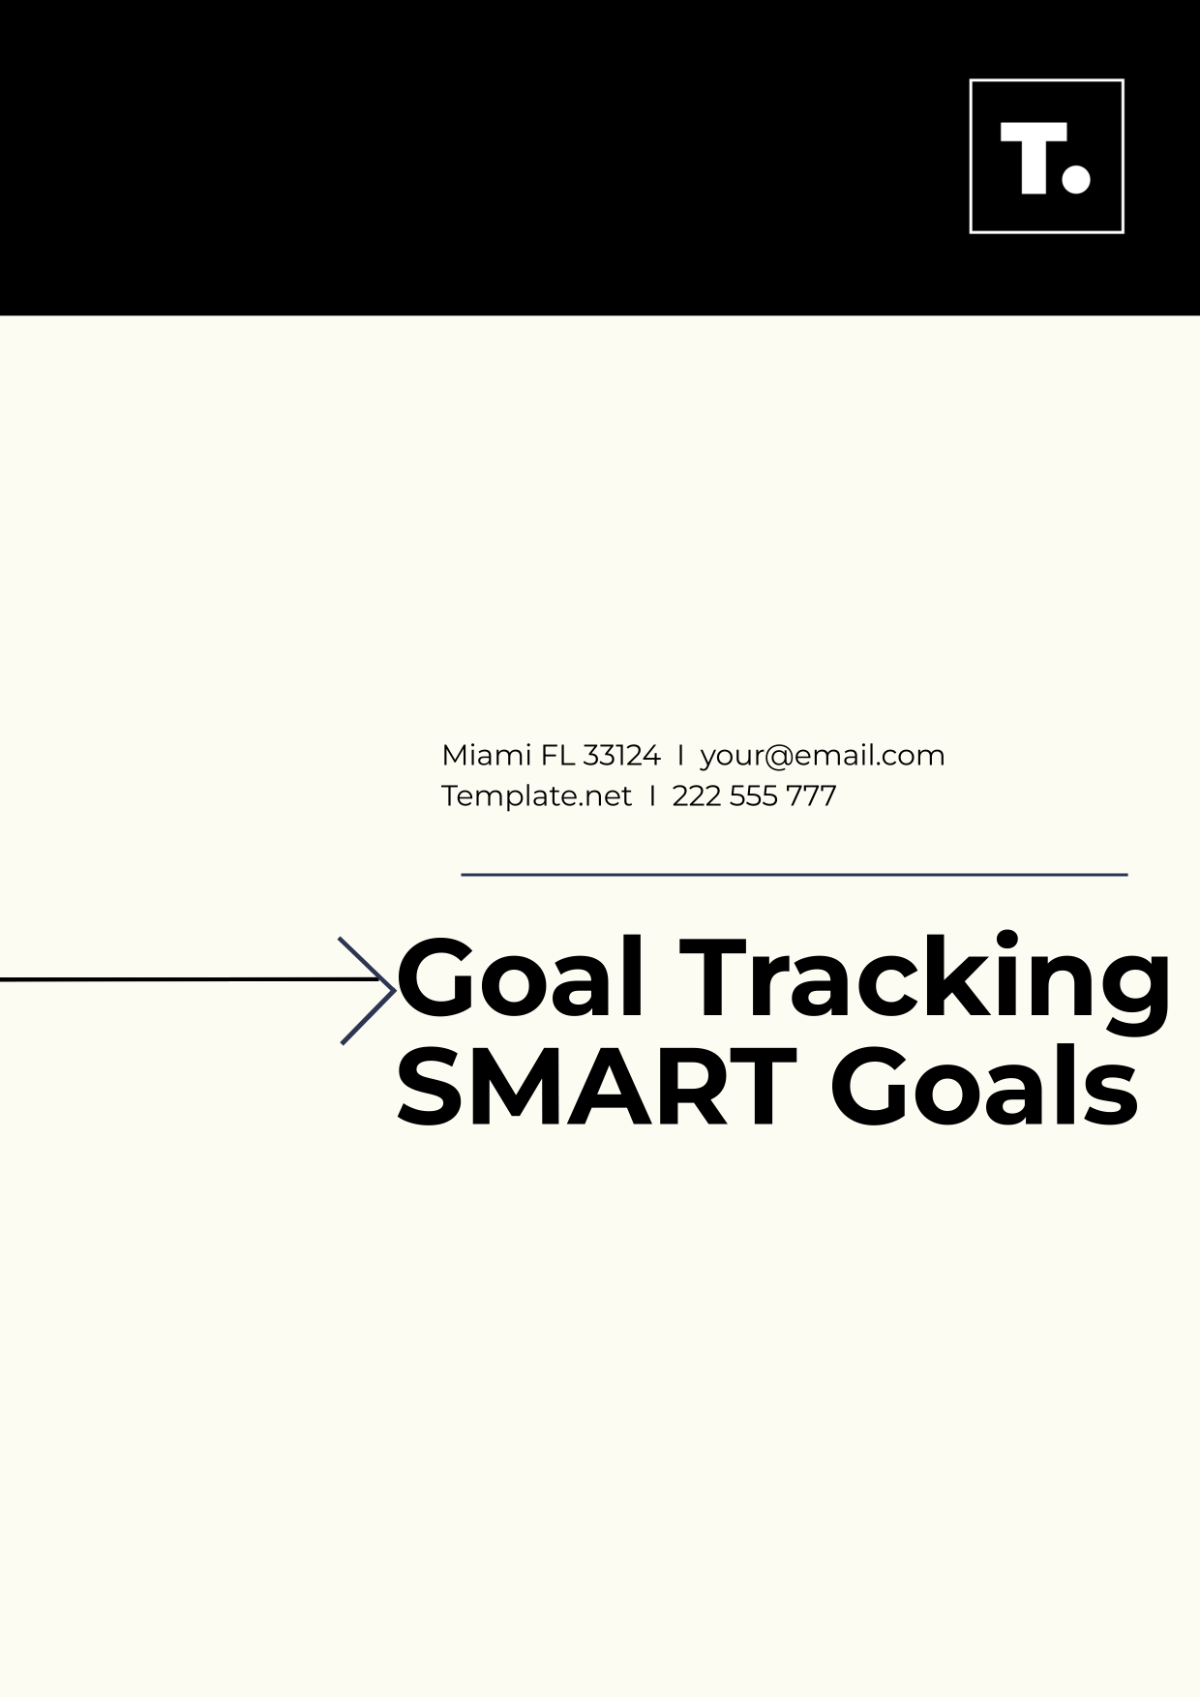 Goal Tracking SMART Goals Template